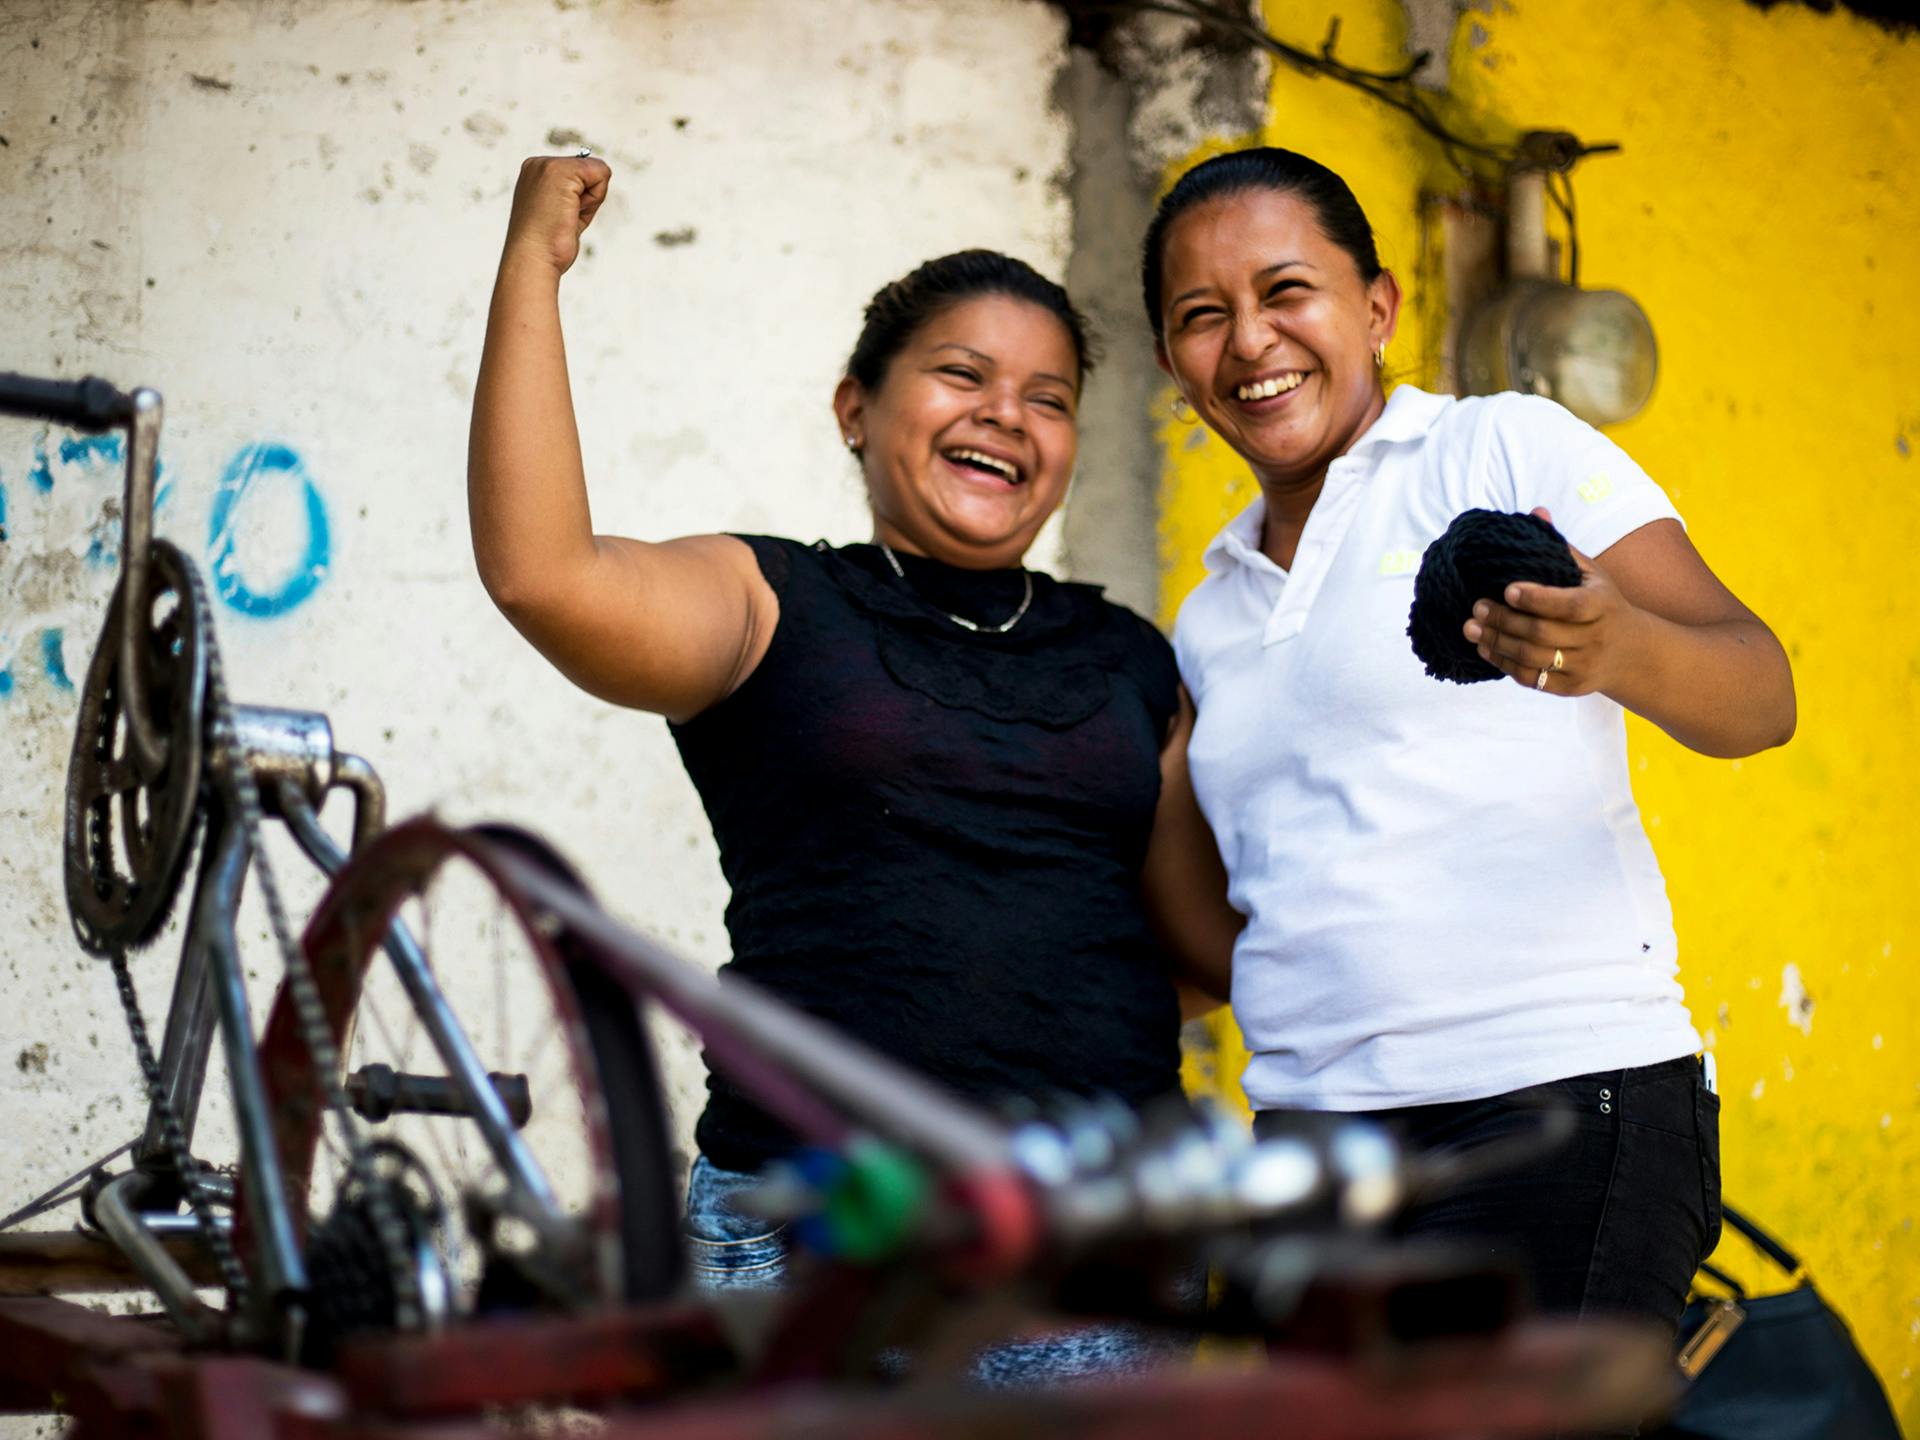 Två skrattande kvinnor står framför en uppochner-vänd cykel. Den ena kvinnan höjer armen med knuten näve.